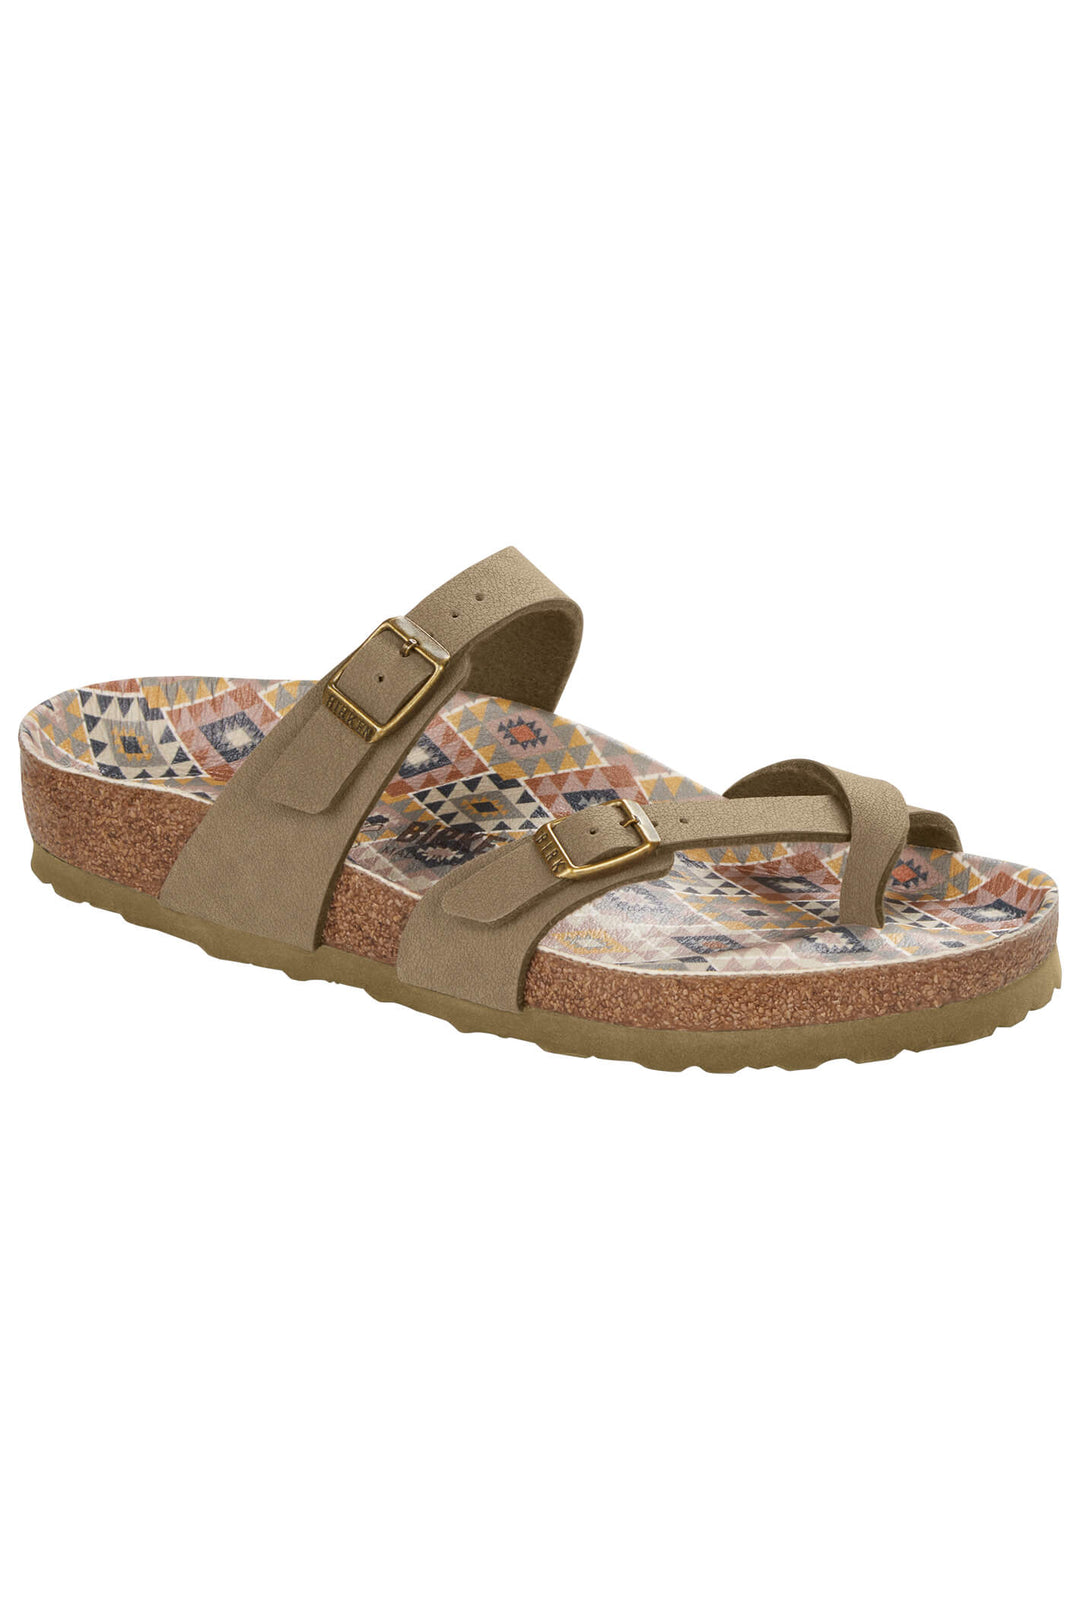 Birkenstock Mayari 1020571 Vegan Faded Khaki Narrow Fit Sandal